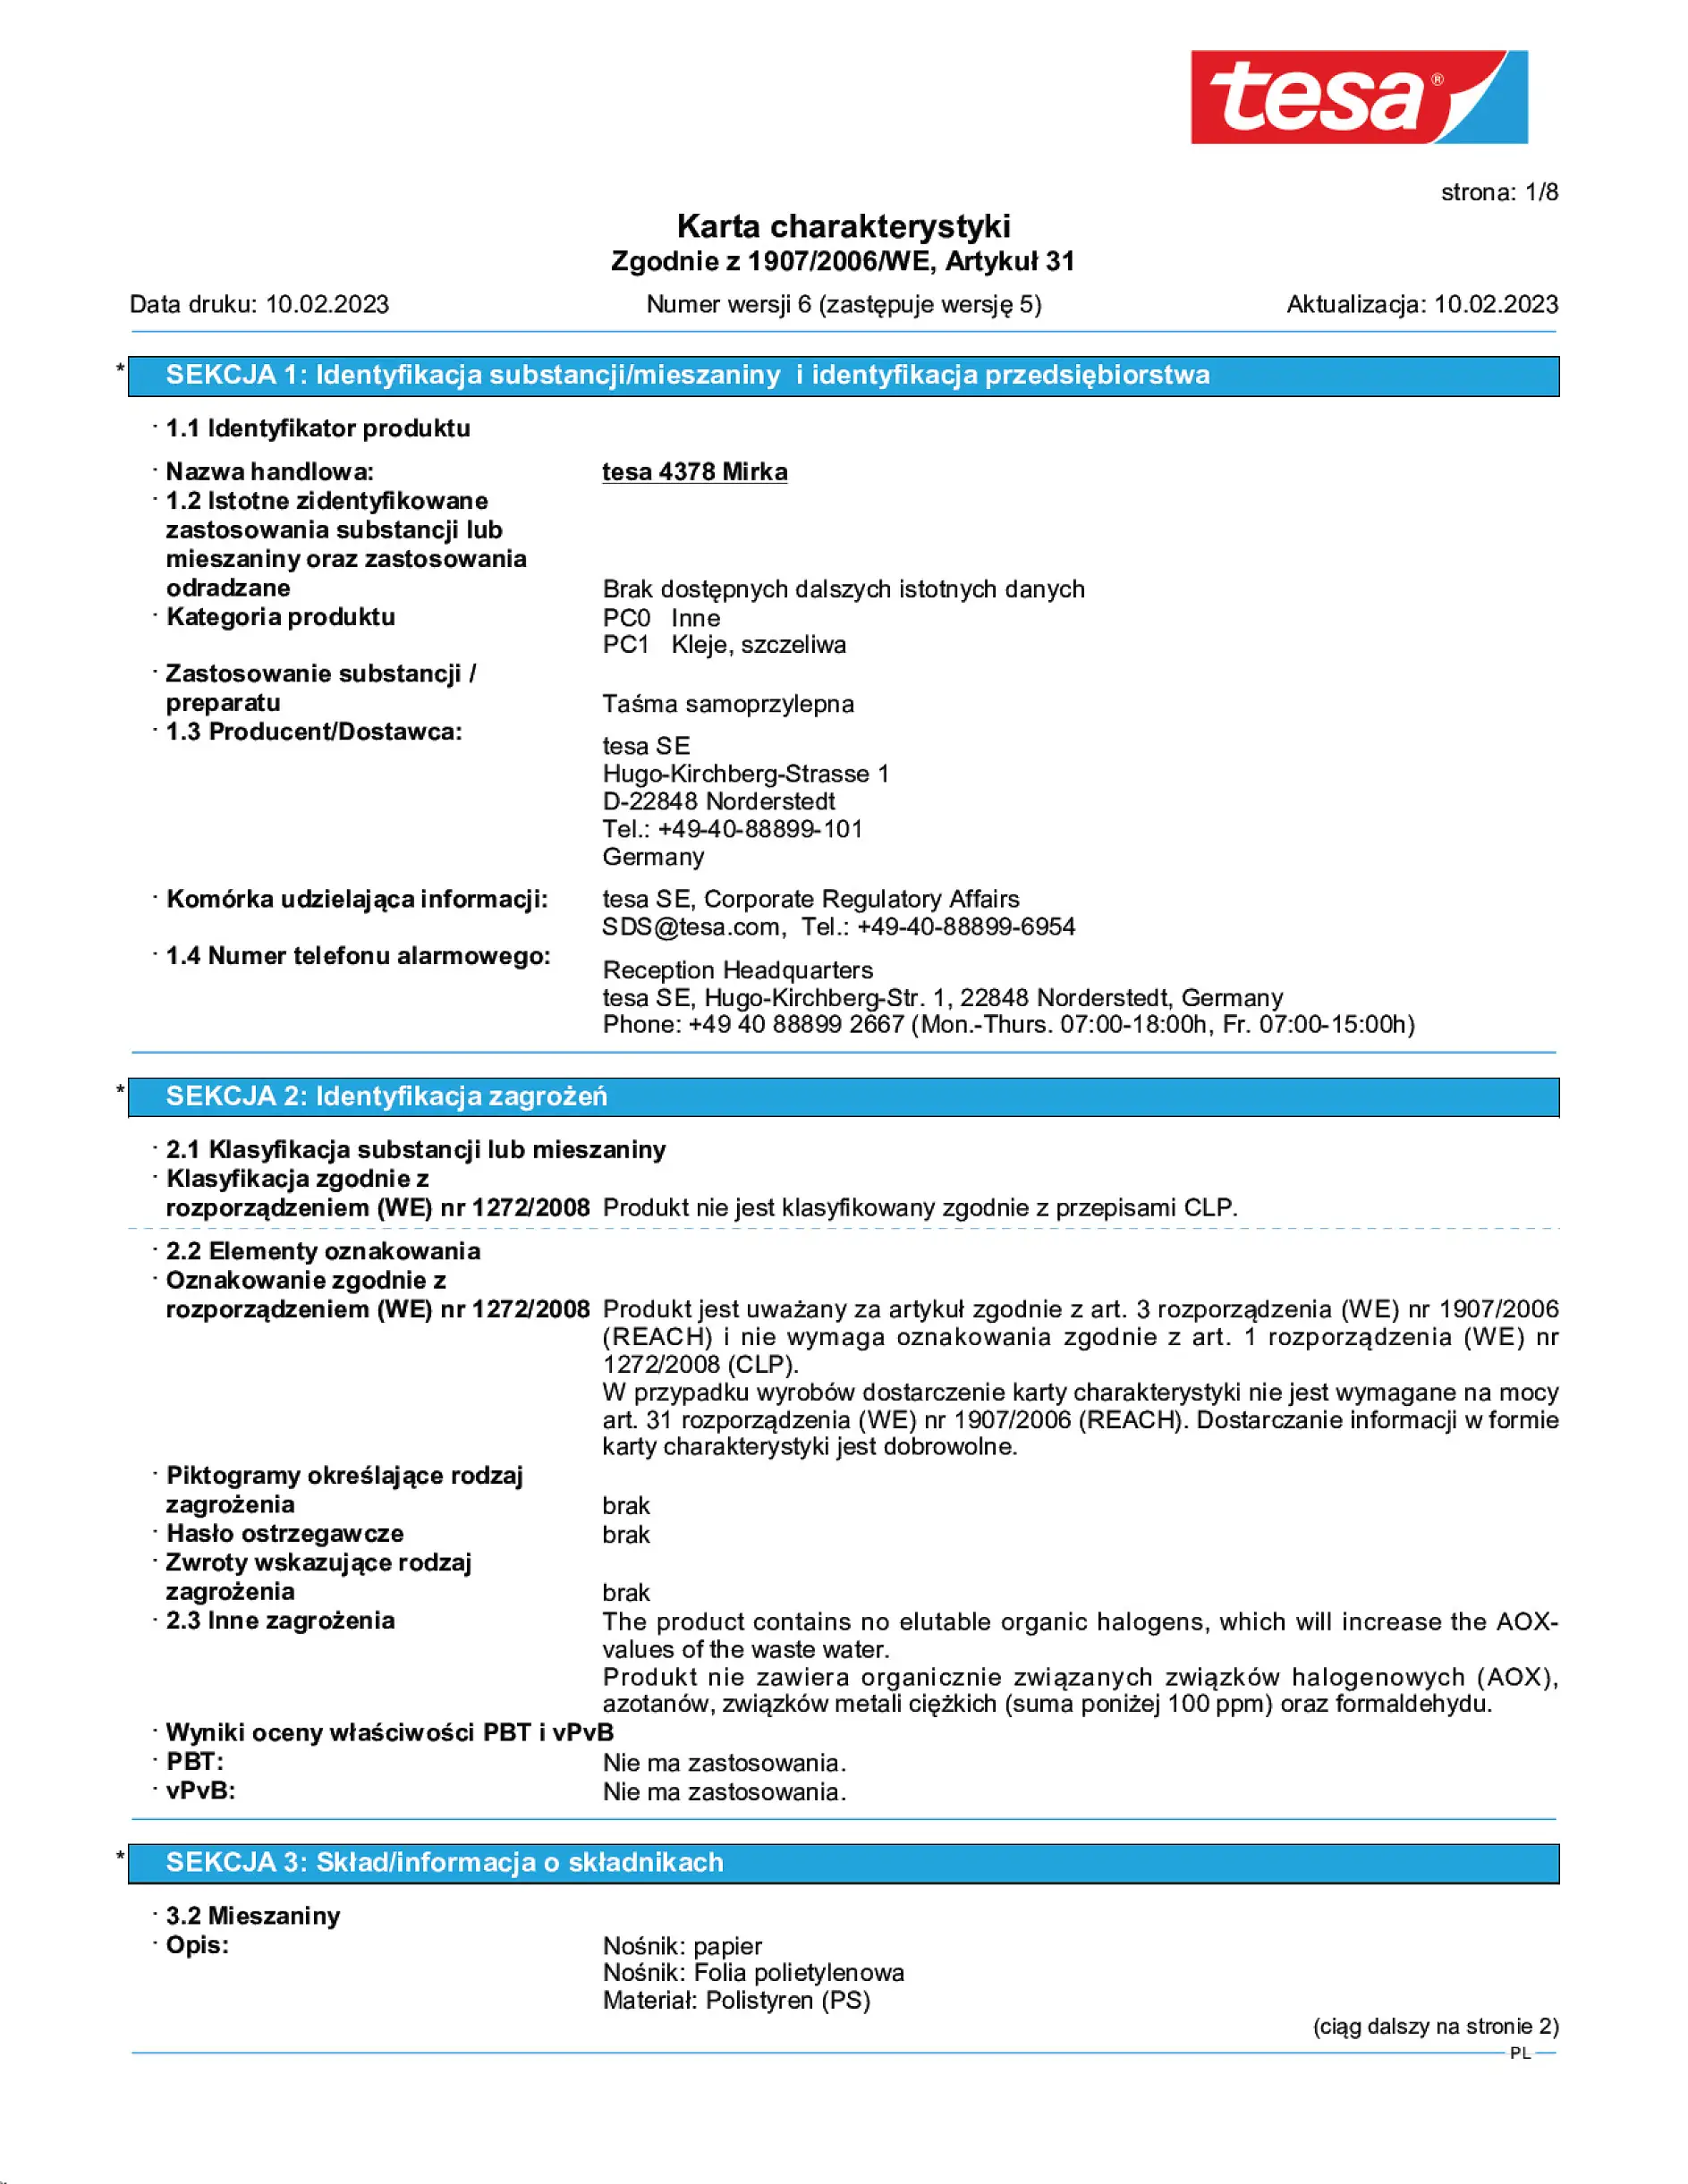 Safety data sheet_tesa® 04378_pl-PL_v6